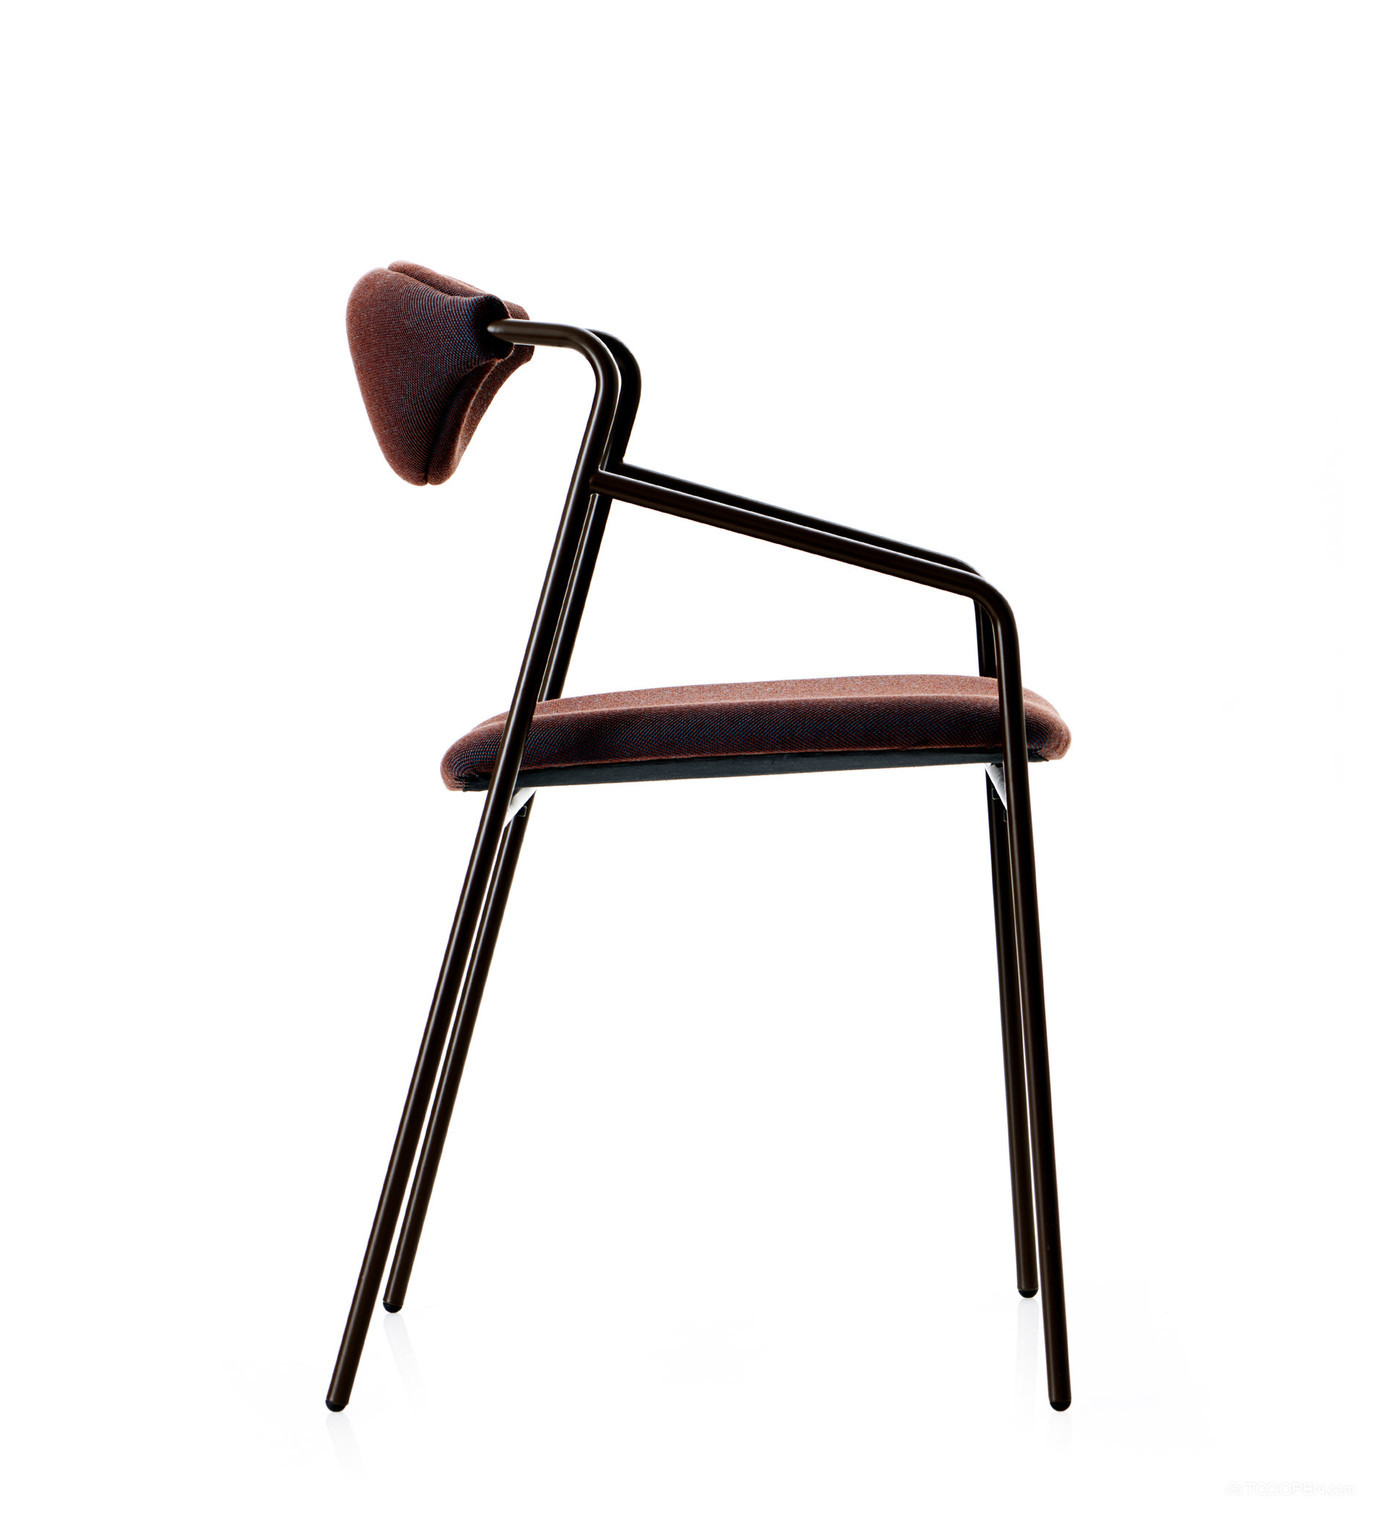 高清极简现代钢管椅家具设计欣赏图片-03